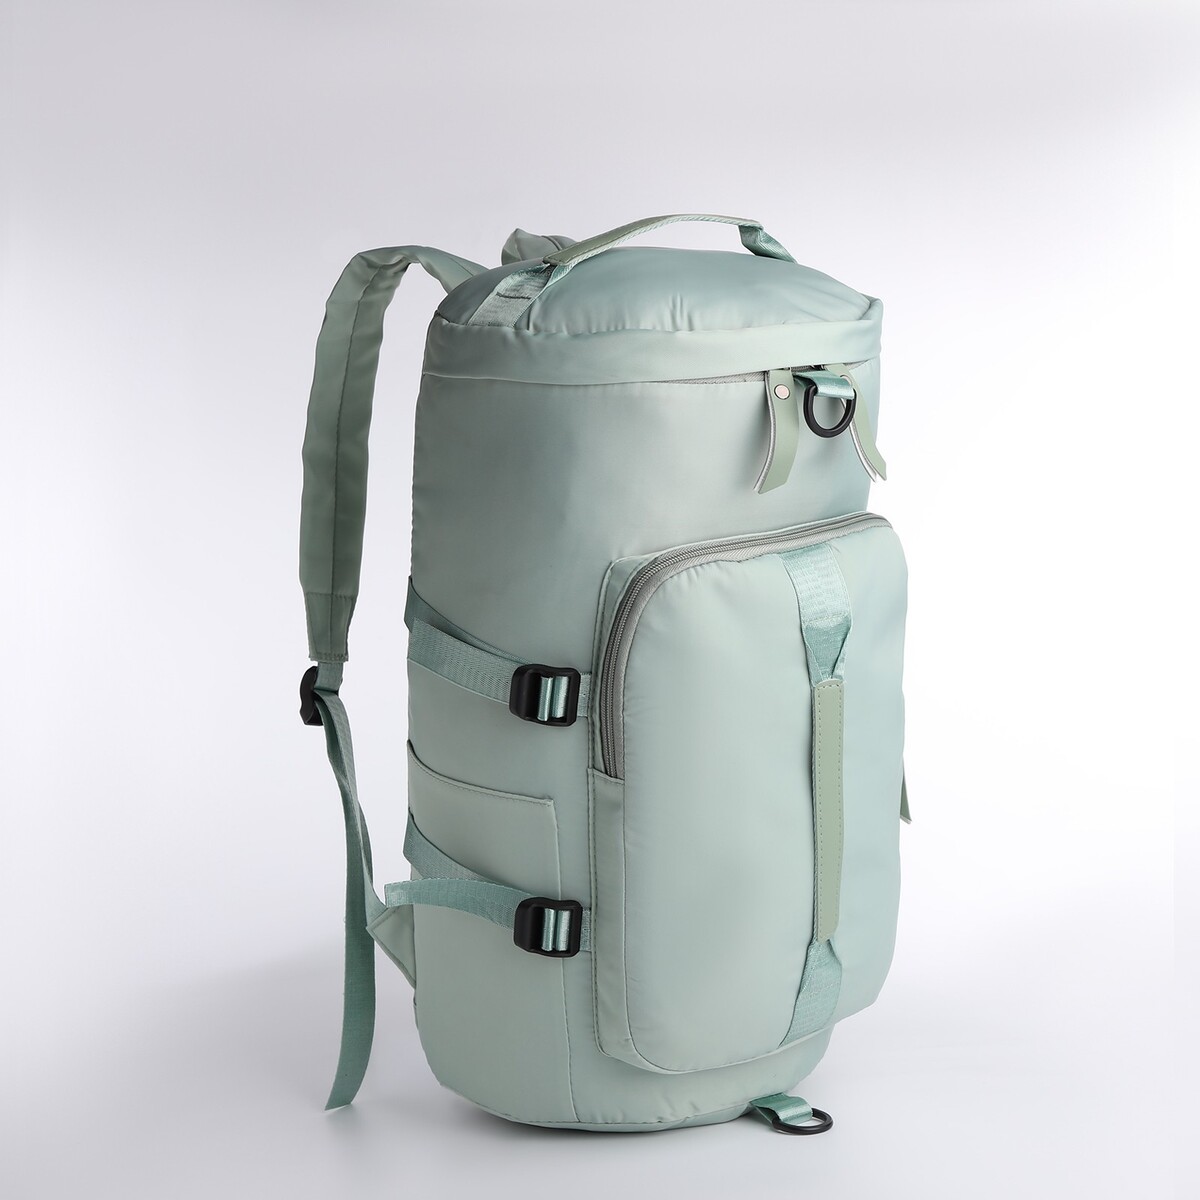 Рюкзак-сумка на молнии, 4 наружных кармана, отделение для обуви, цвет зеленый рюкзак 2 отдела на молнии 4 наружных кармана желтый зеленый